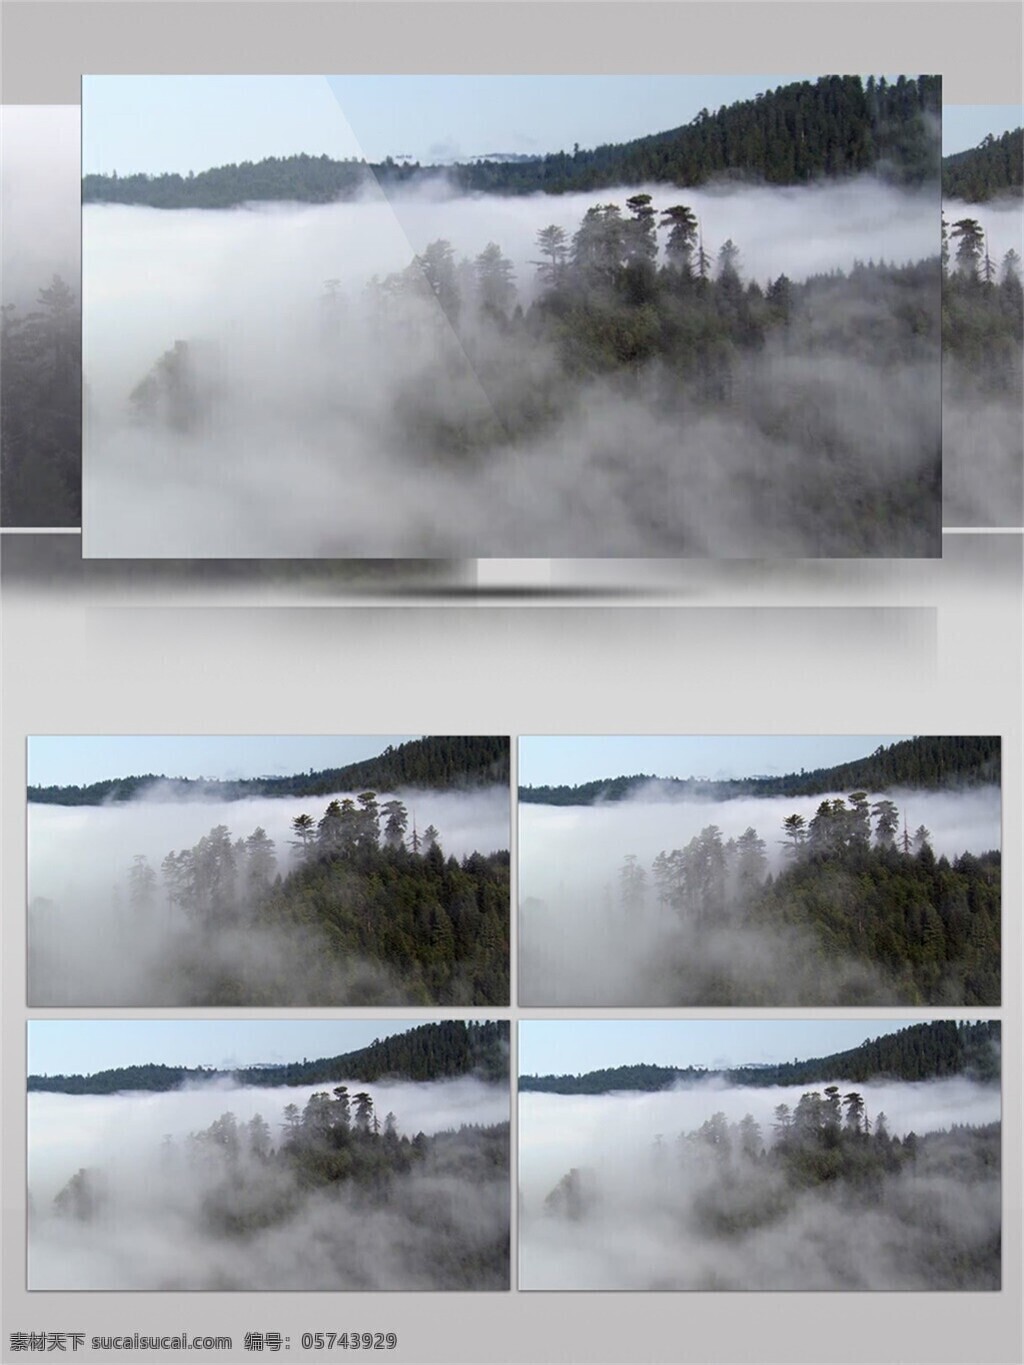 雾气 包围 山林 视频 音效 壮观 唯美 空气清新 树林 视频素材 仙气 高海拔 视频音效